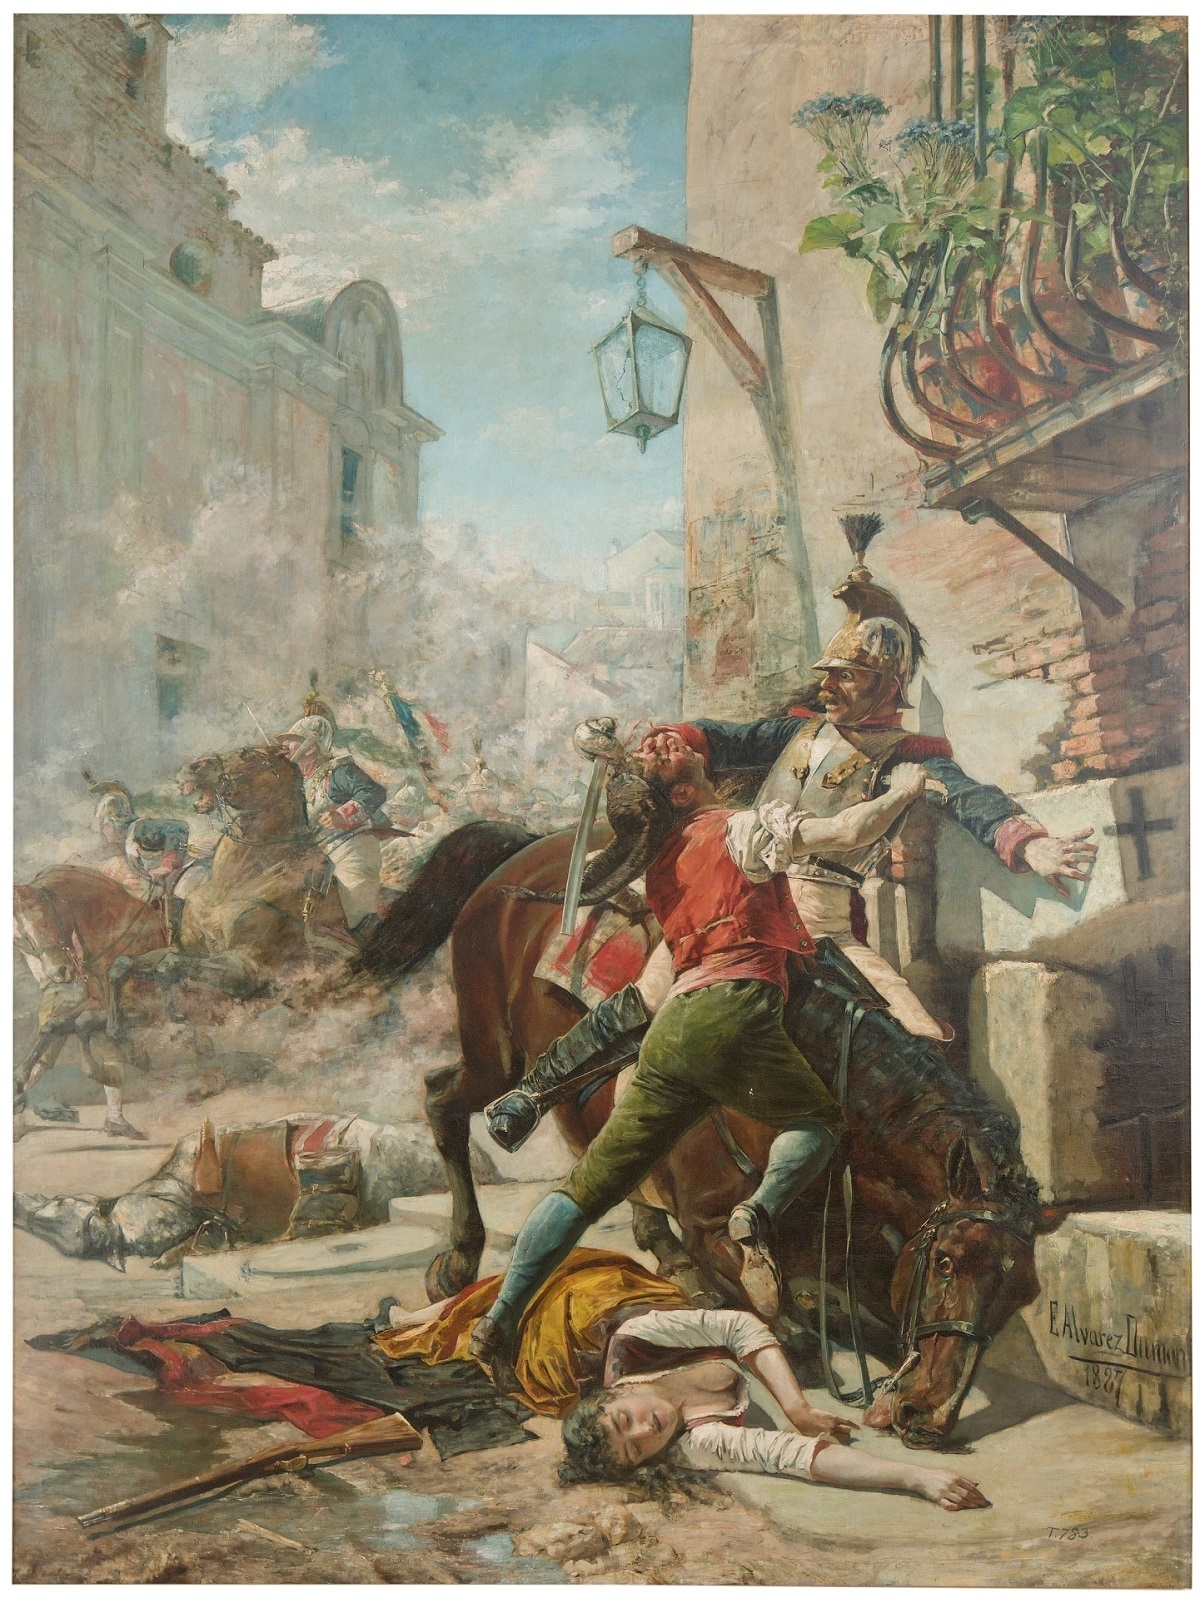 Detalle de 'Malasaa y su hija se baten contra los franceses', en depsito en el Museo de Zaragoza.